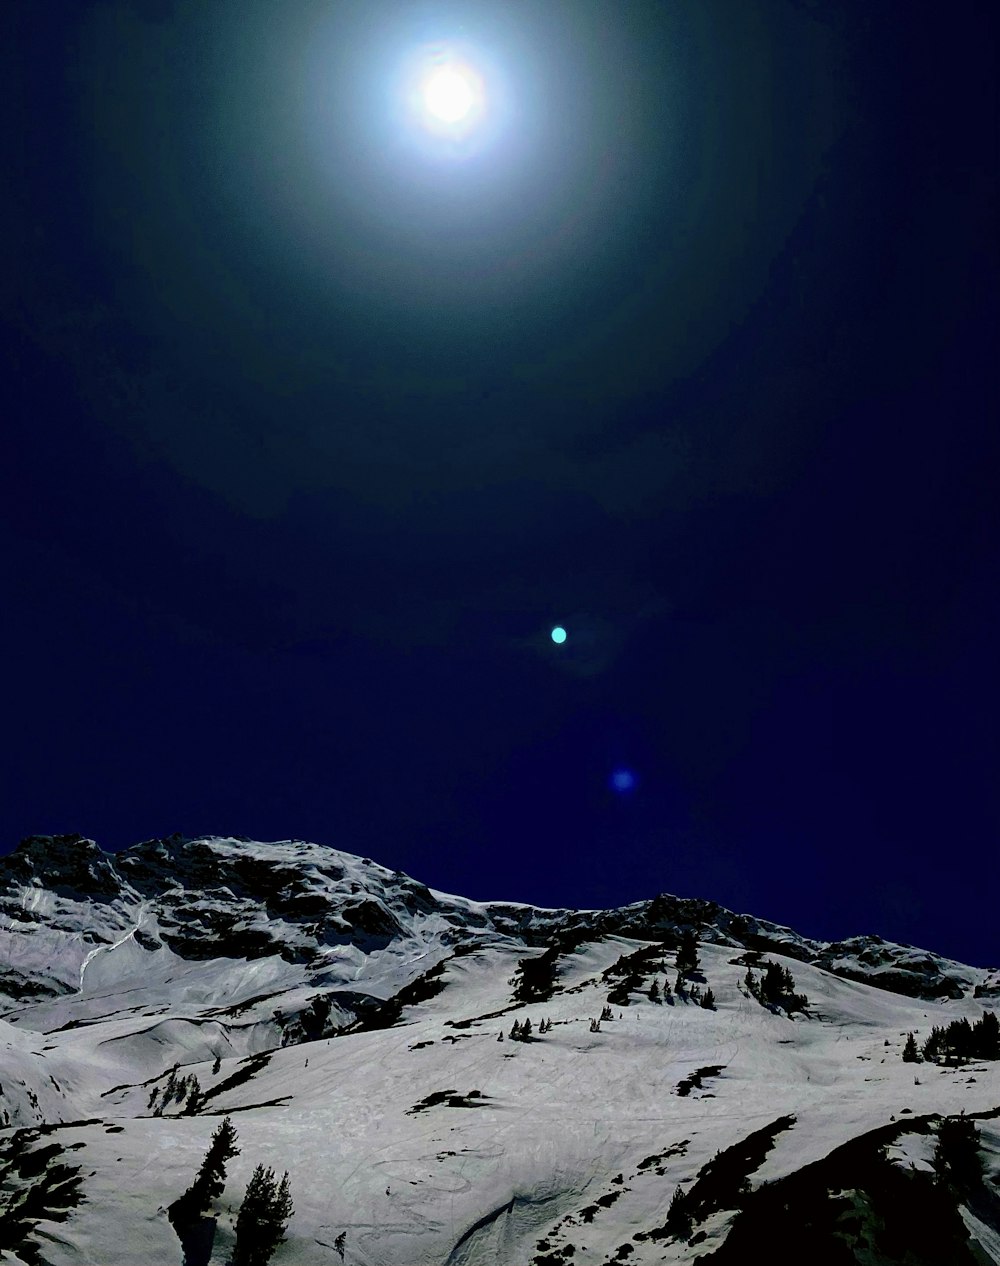 Ein Vollmond ist über einem schneebedeckten Berg zu sehen